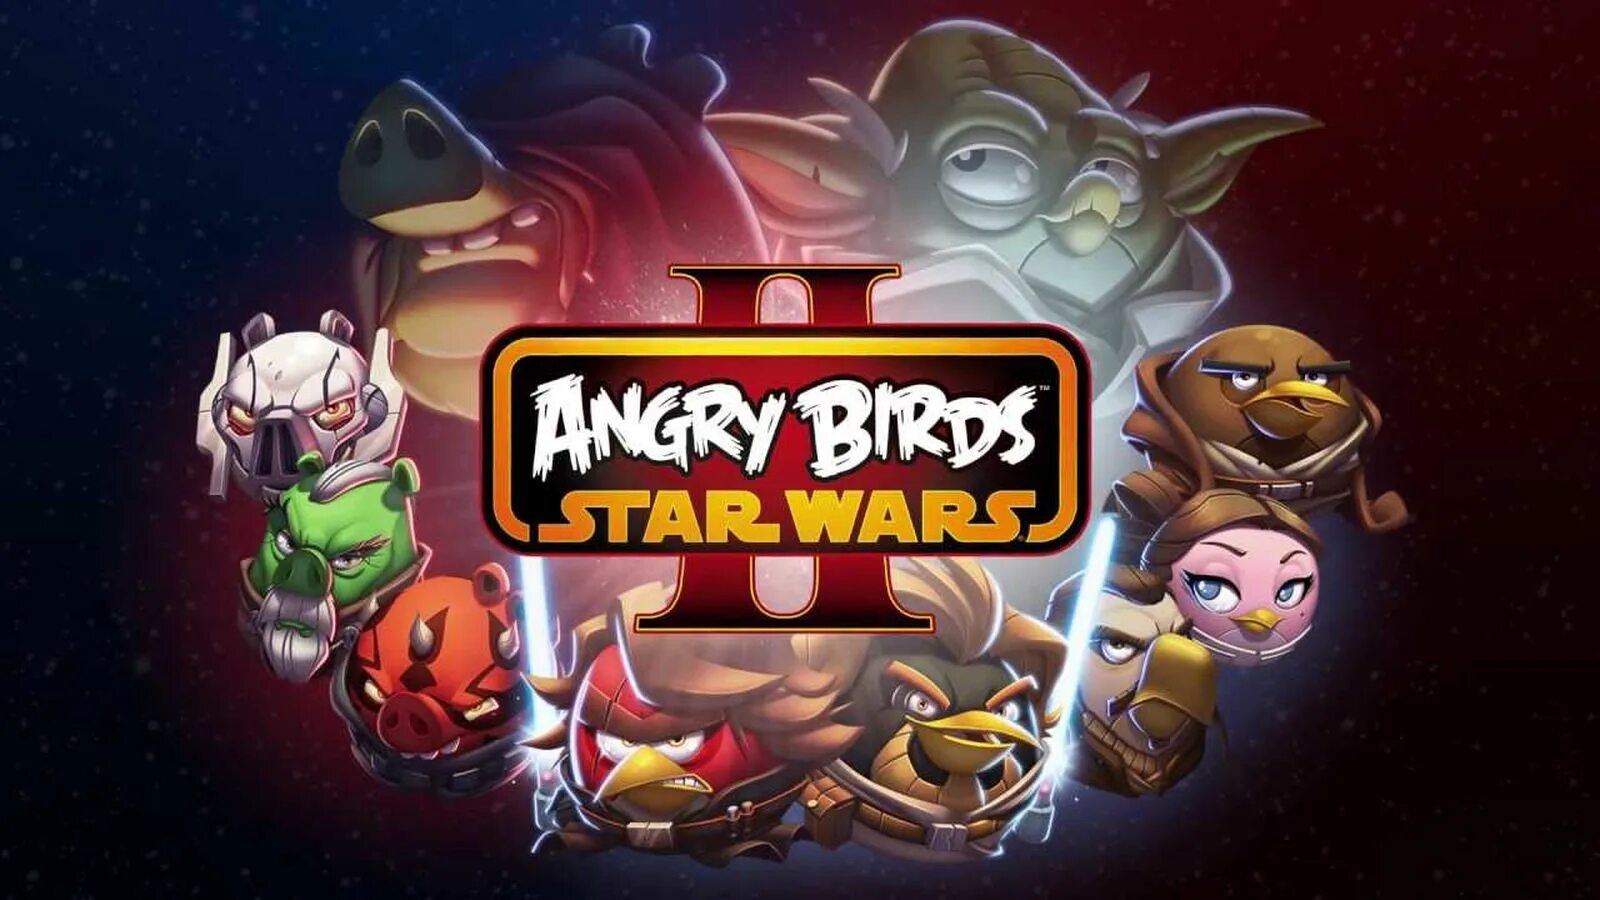 Энгрибёрдцзвёздные войны 2. Игра Angry Birds Star Wars 3. Звездные войны Энгри Бердс Стар ВАРС 2. Игра Angry Birds Star Wars 2.